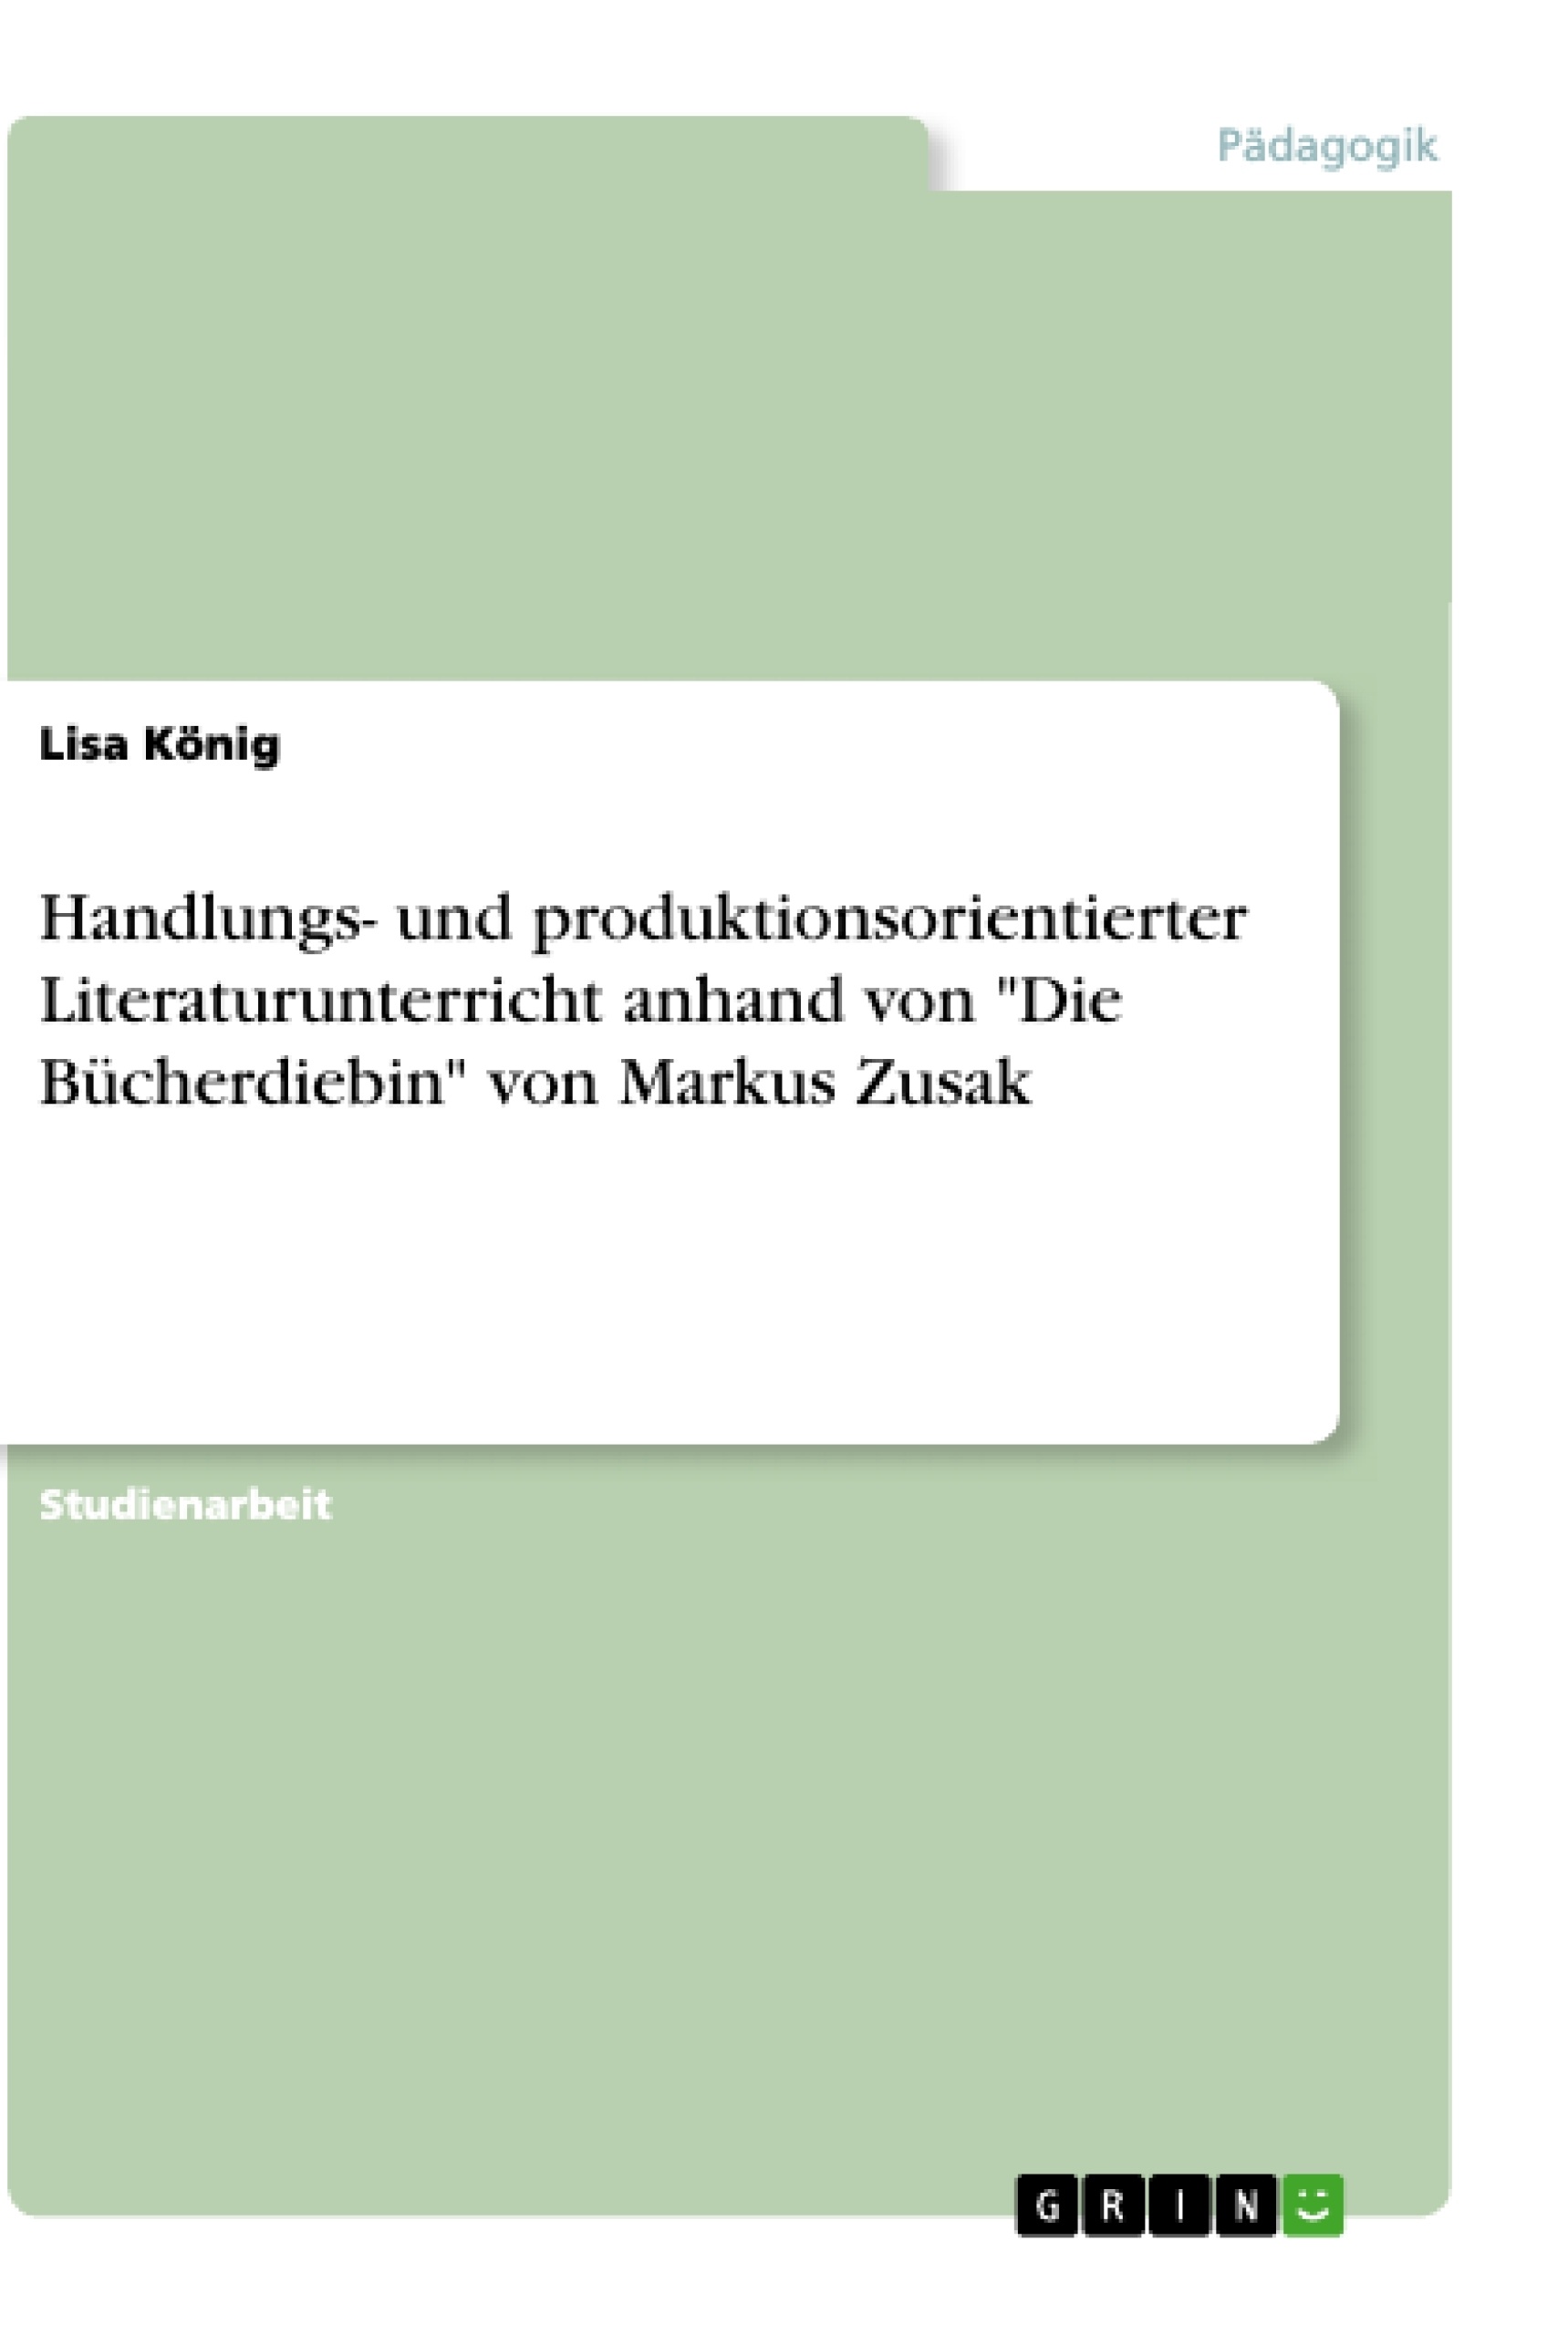 Titre: Handlungs- und produktionsorientierter Literaturunterricht anhand von "Die Bücherdiebin" von Markus Zusak